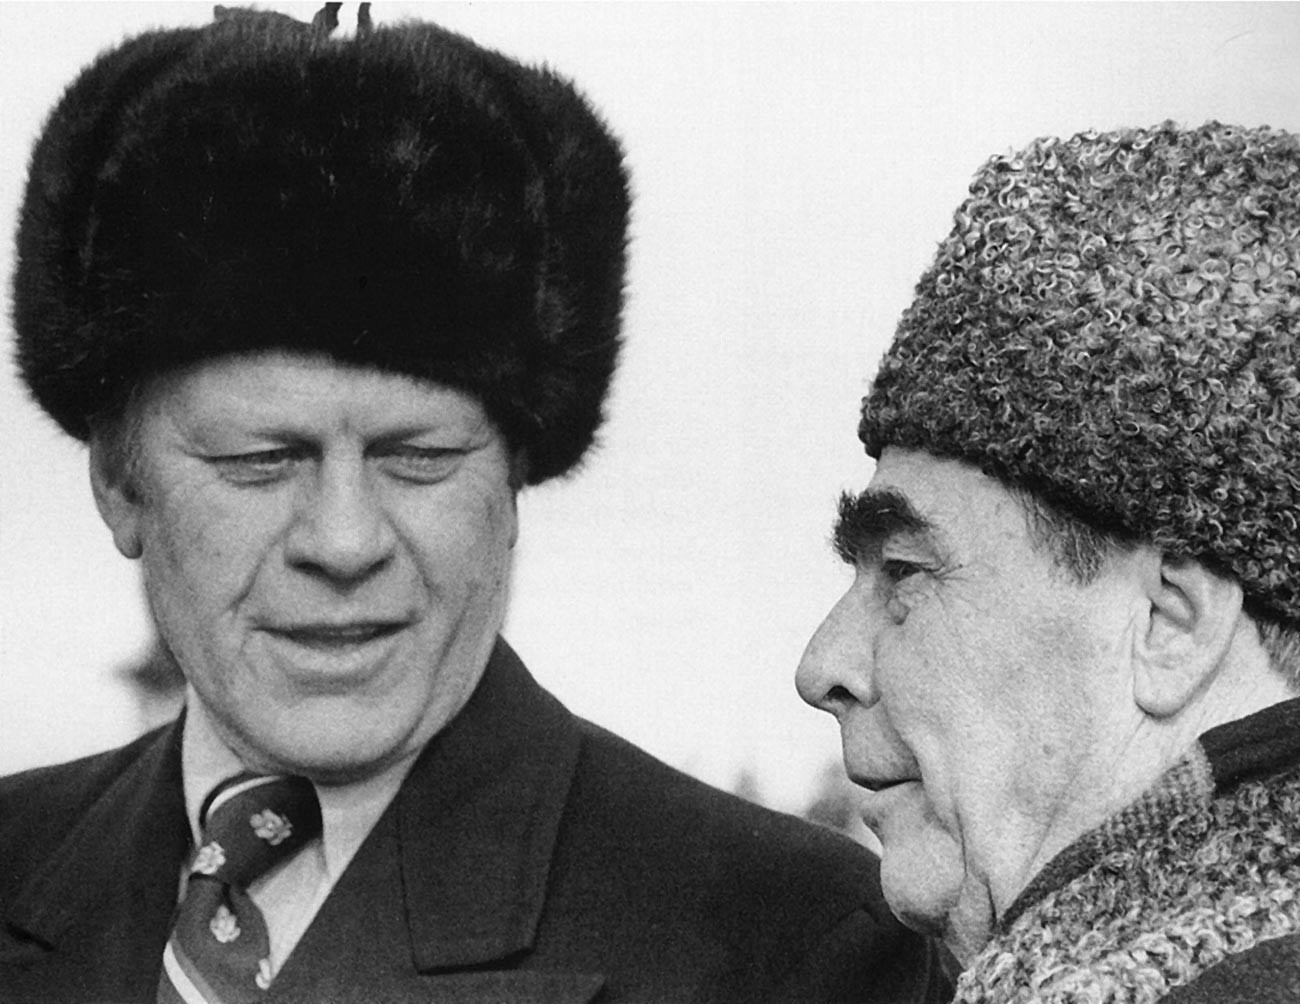 Le président américain Gerald Ford rencontrant le dirigeant soviétique Leonid Brejnev, 1974